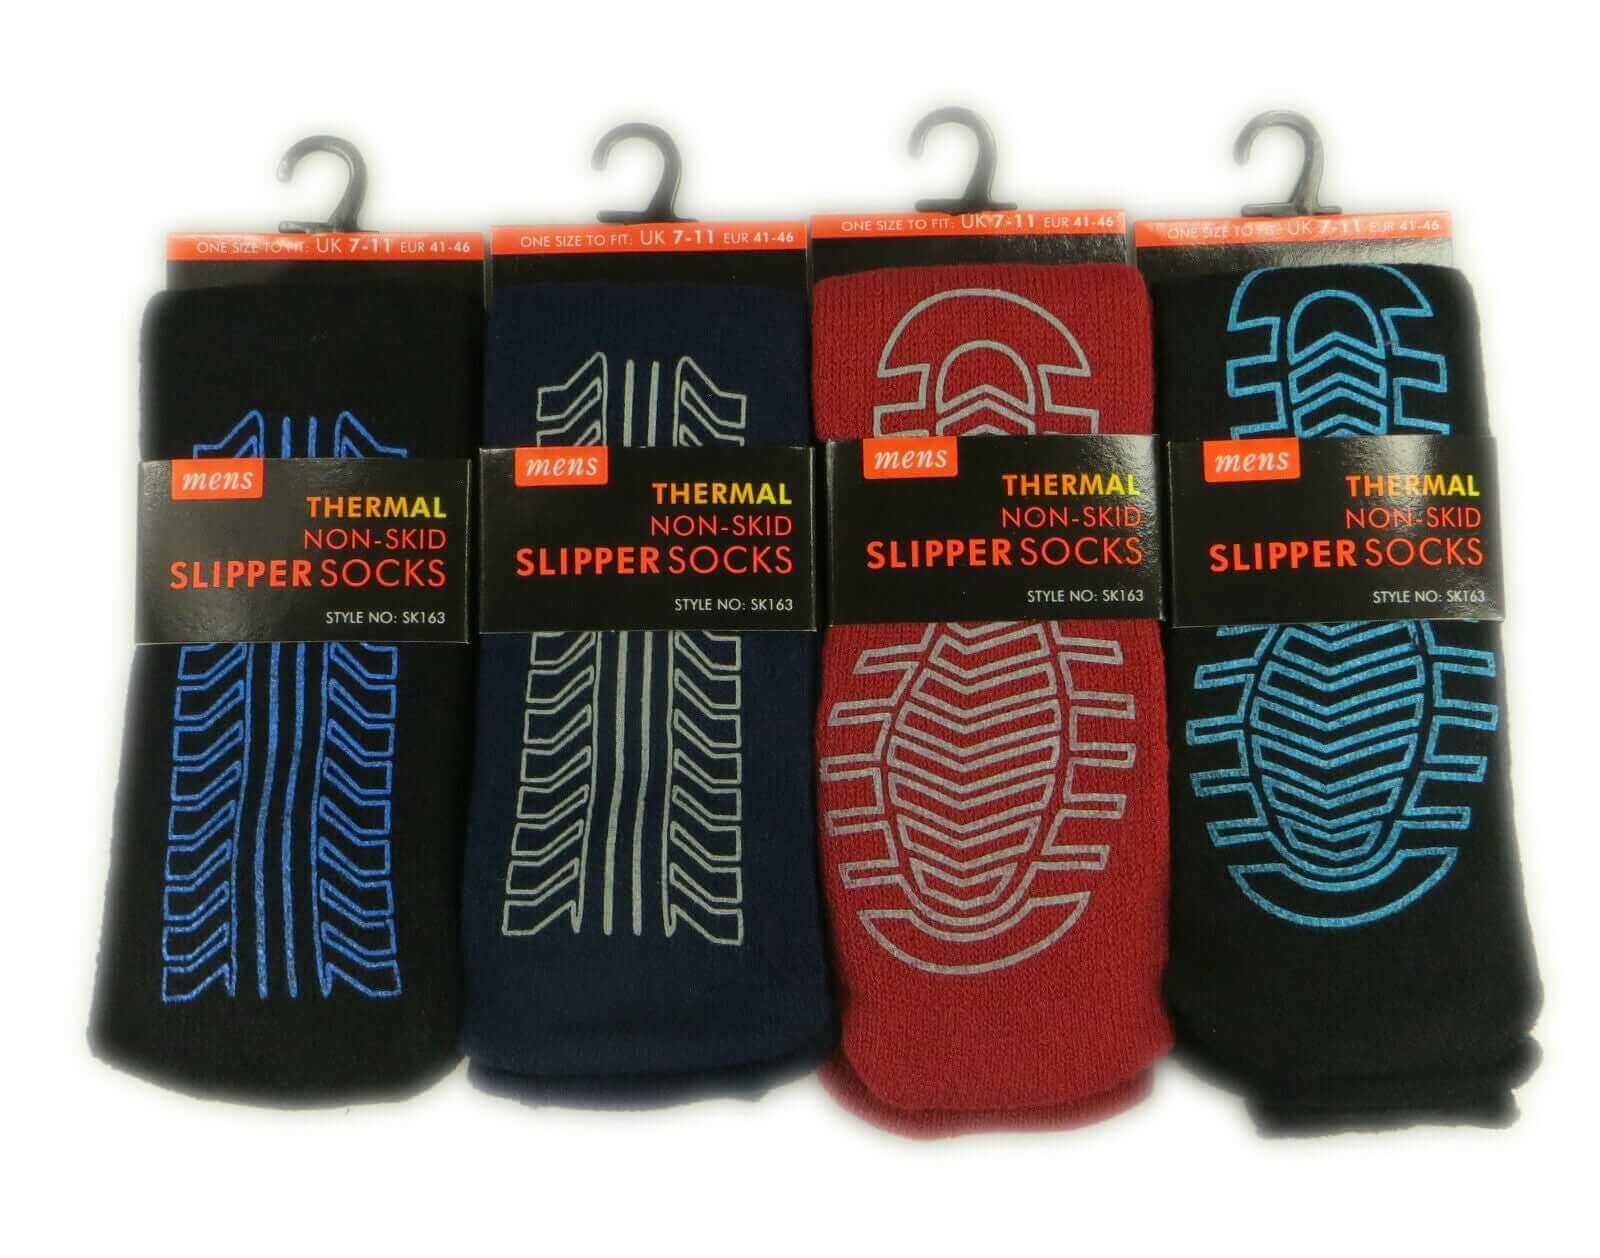 4 Pairs Of Men's Thermal Slipper Socks, Non-Skid Gripper Socks, Winter Gift  S163. Buy Now For £8.00.